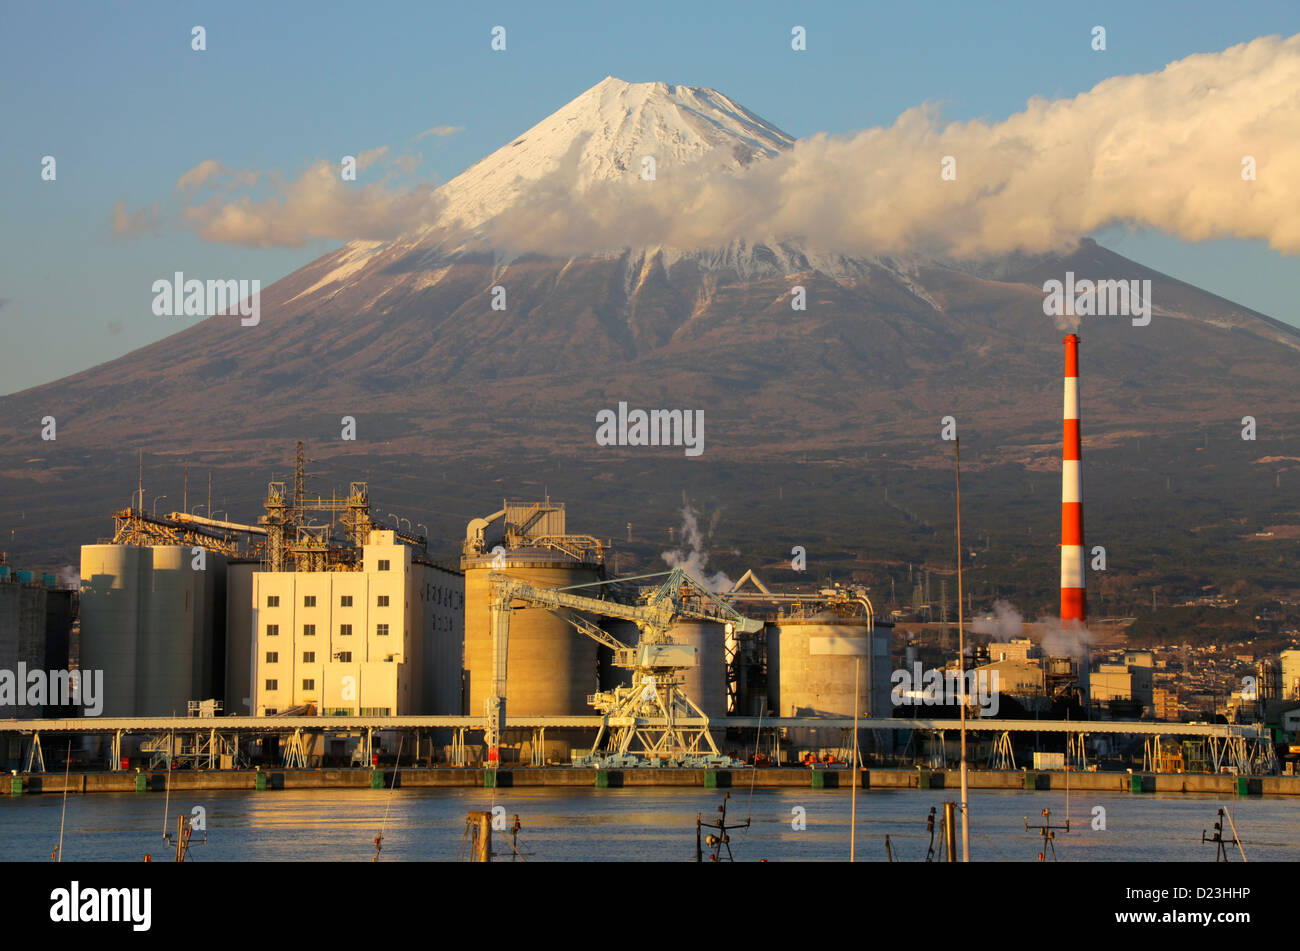 Mount Fuji and factories at Tagonoura harbor Shizuoka Japan Stock Photo